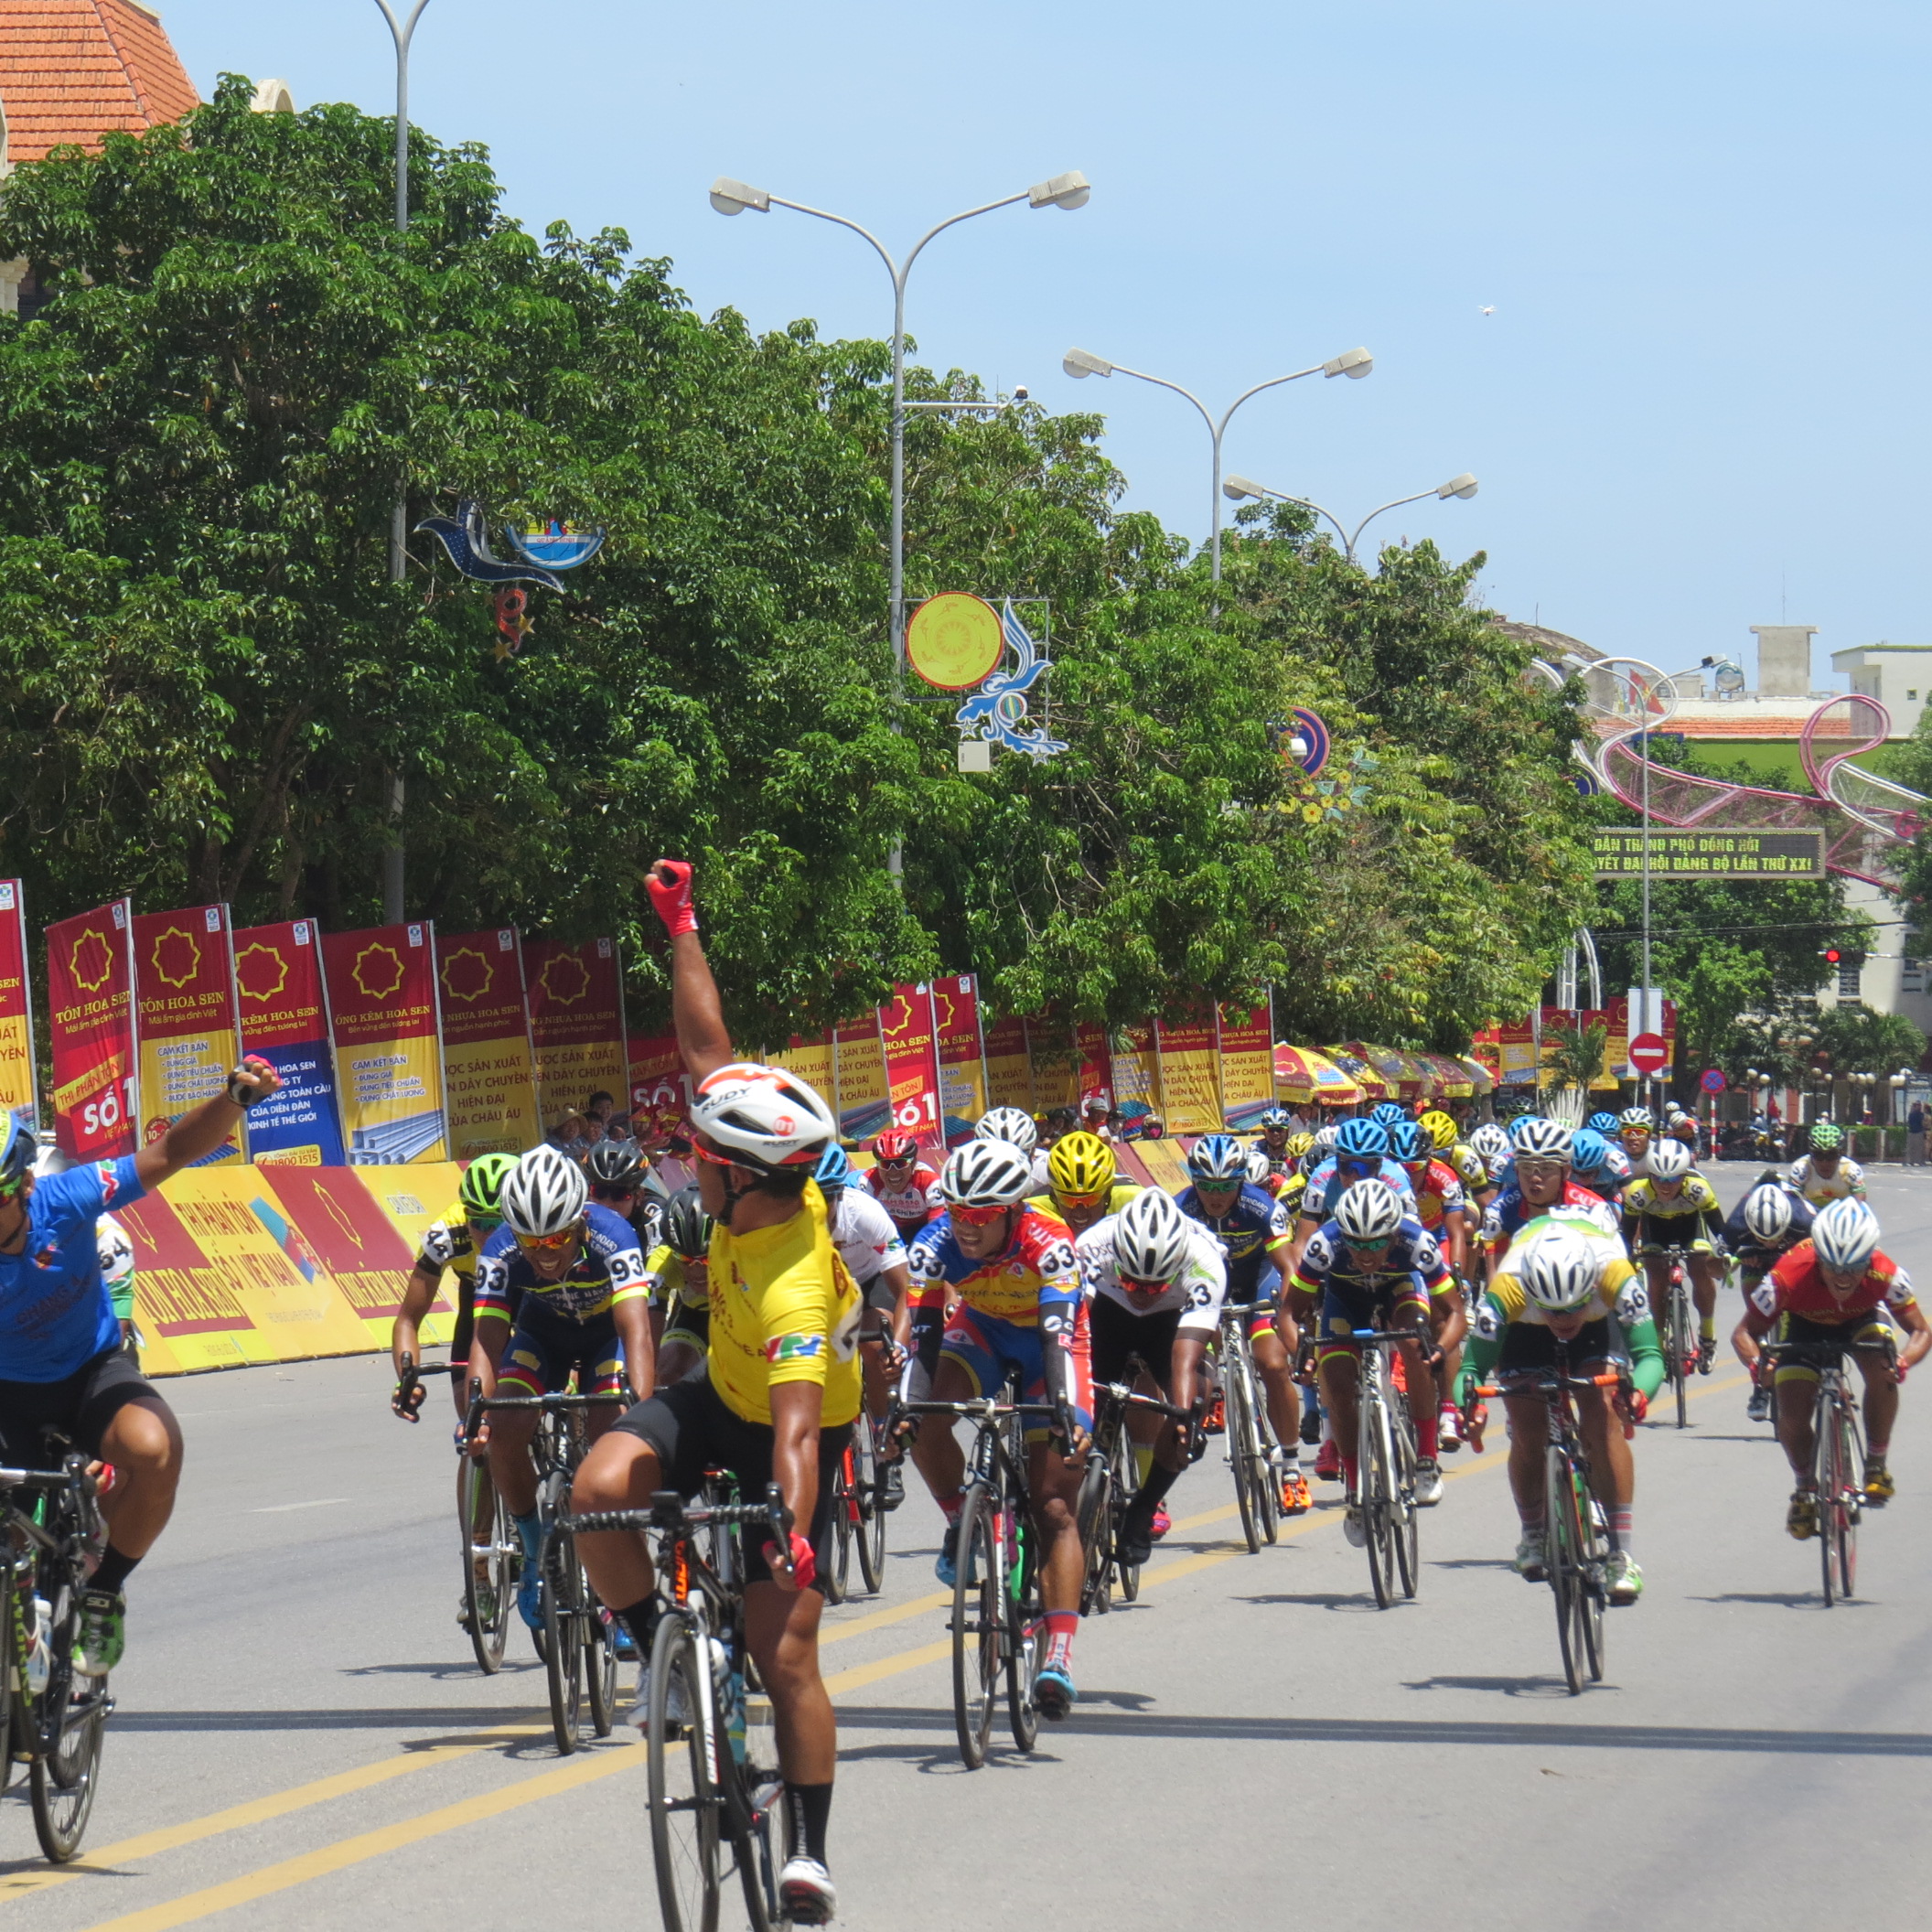 Đoàn đoàn đua xe đạp toàn quốc tranh Cúp truyền hình TP. Hồ Chí Minh lần thứ 33 sẽ về đích chặng thứ 9 tại Quảng trường Hồ Chí Minh khoảng 11h30 ngày 15-4-2021.